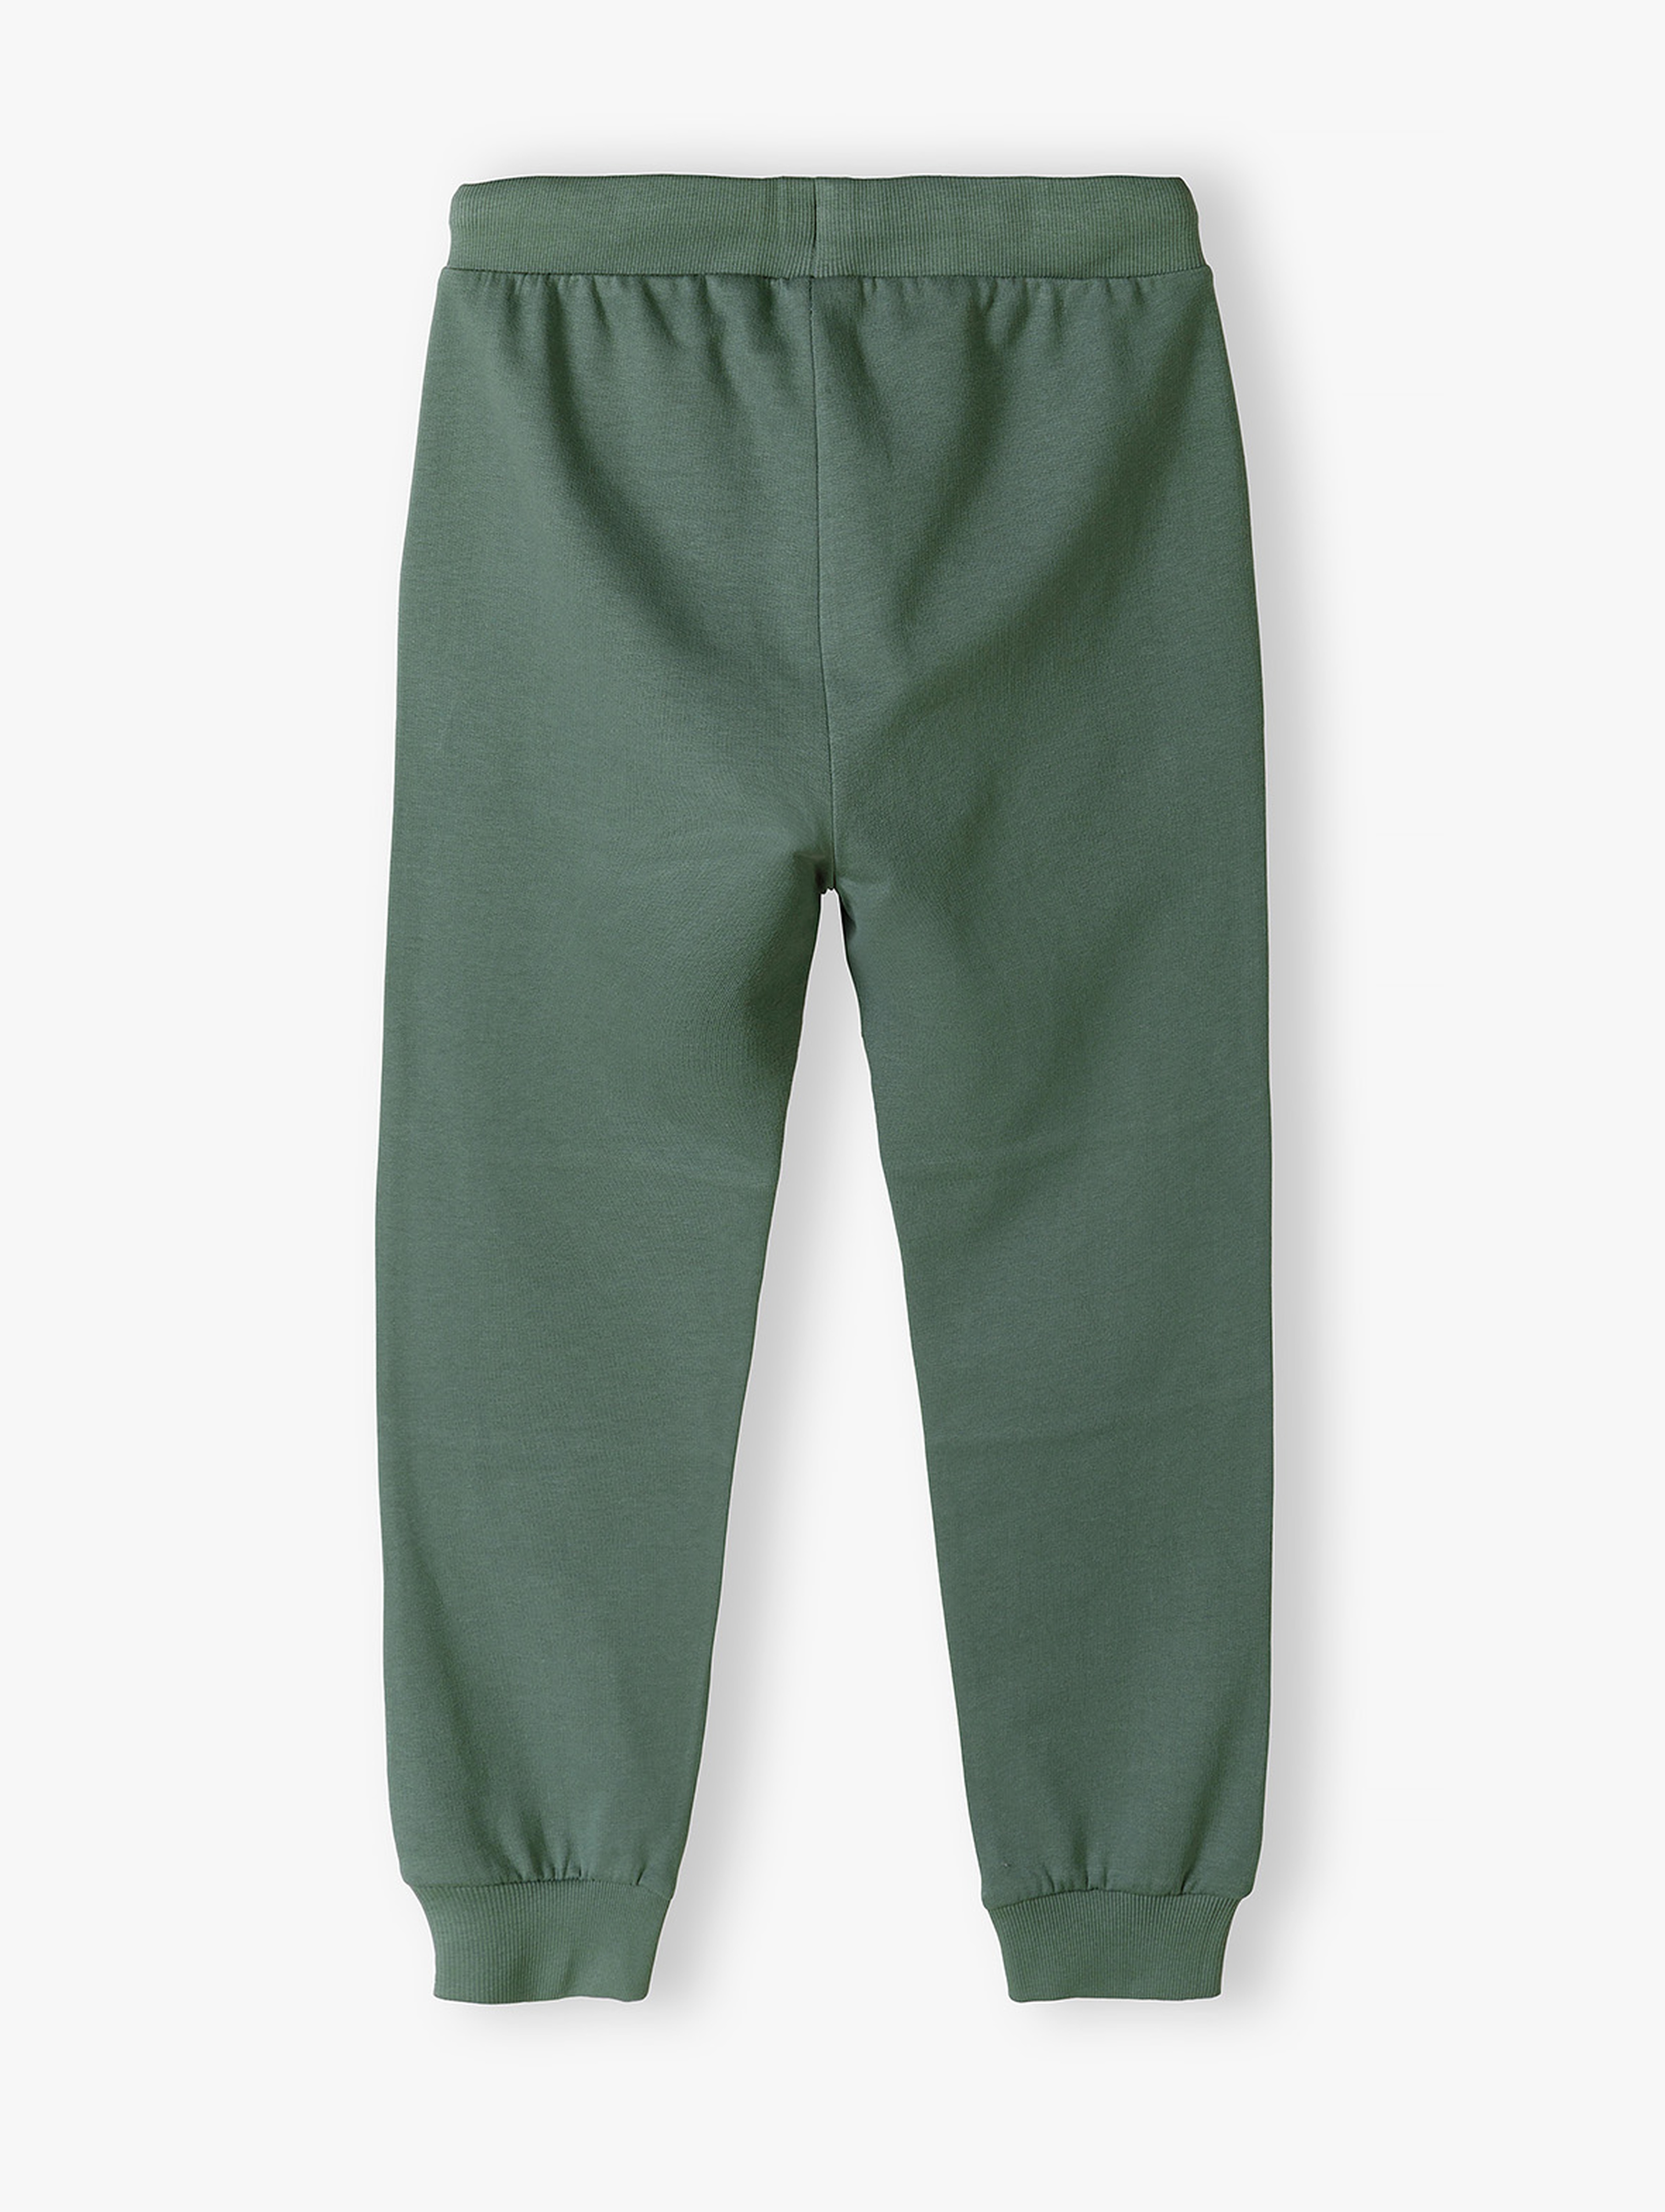 Bawełniane spodnie dresowe regular fit dla chłopca - khaki